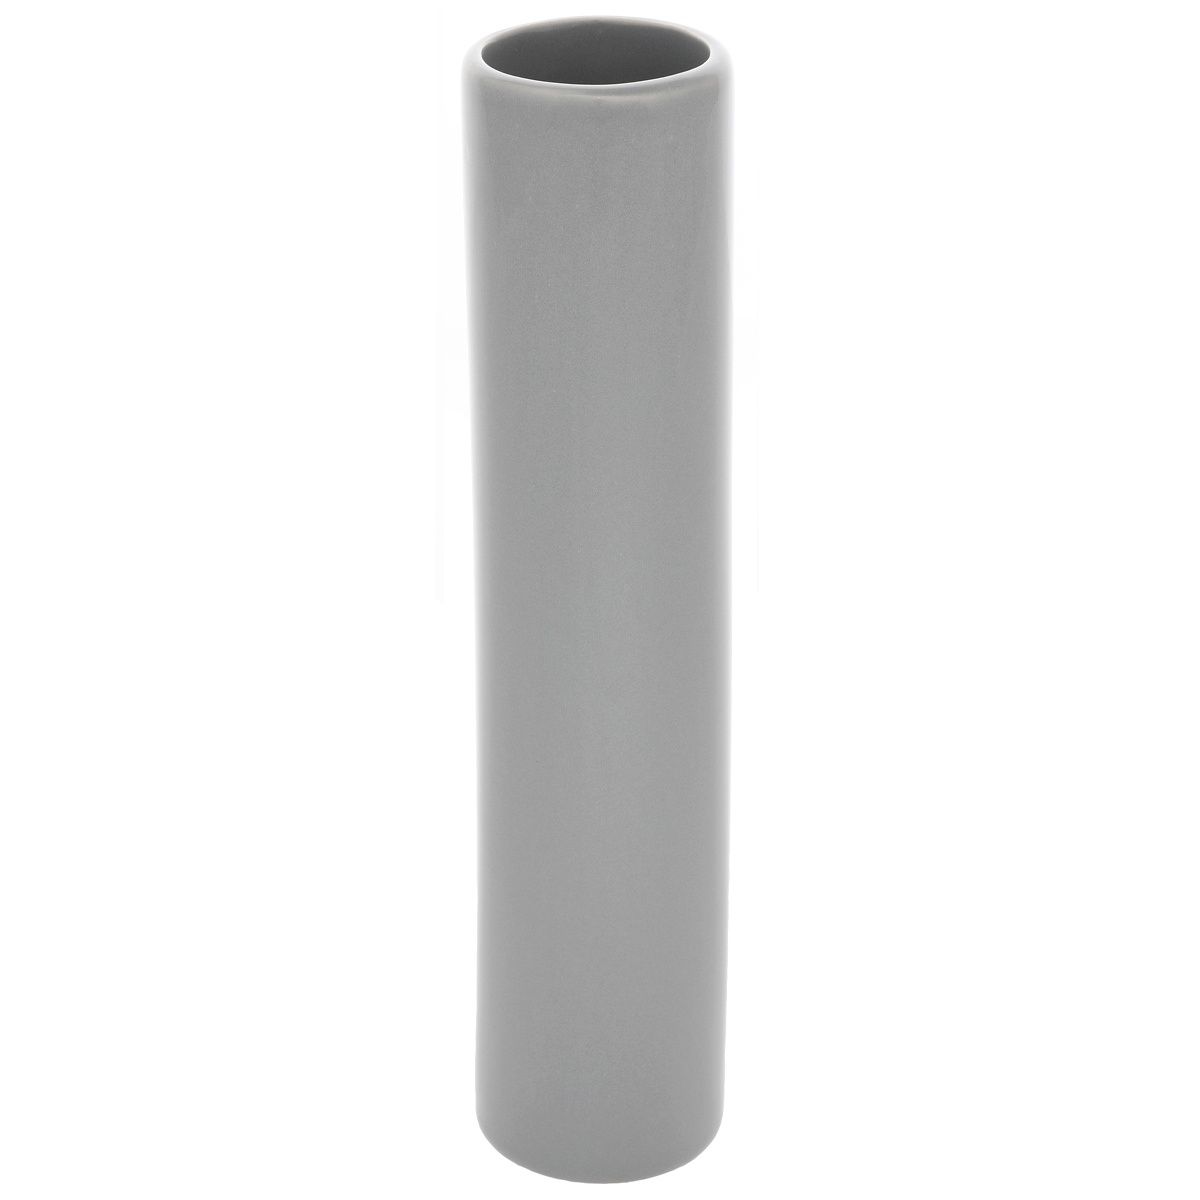 Keramická váza Tube, 5 x 24 x 5 cm, šedá - 4home.cz